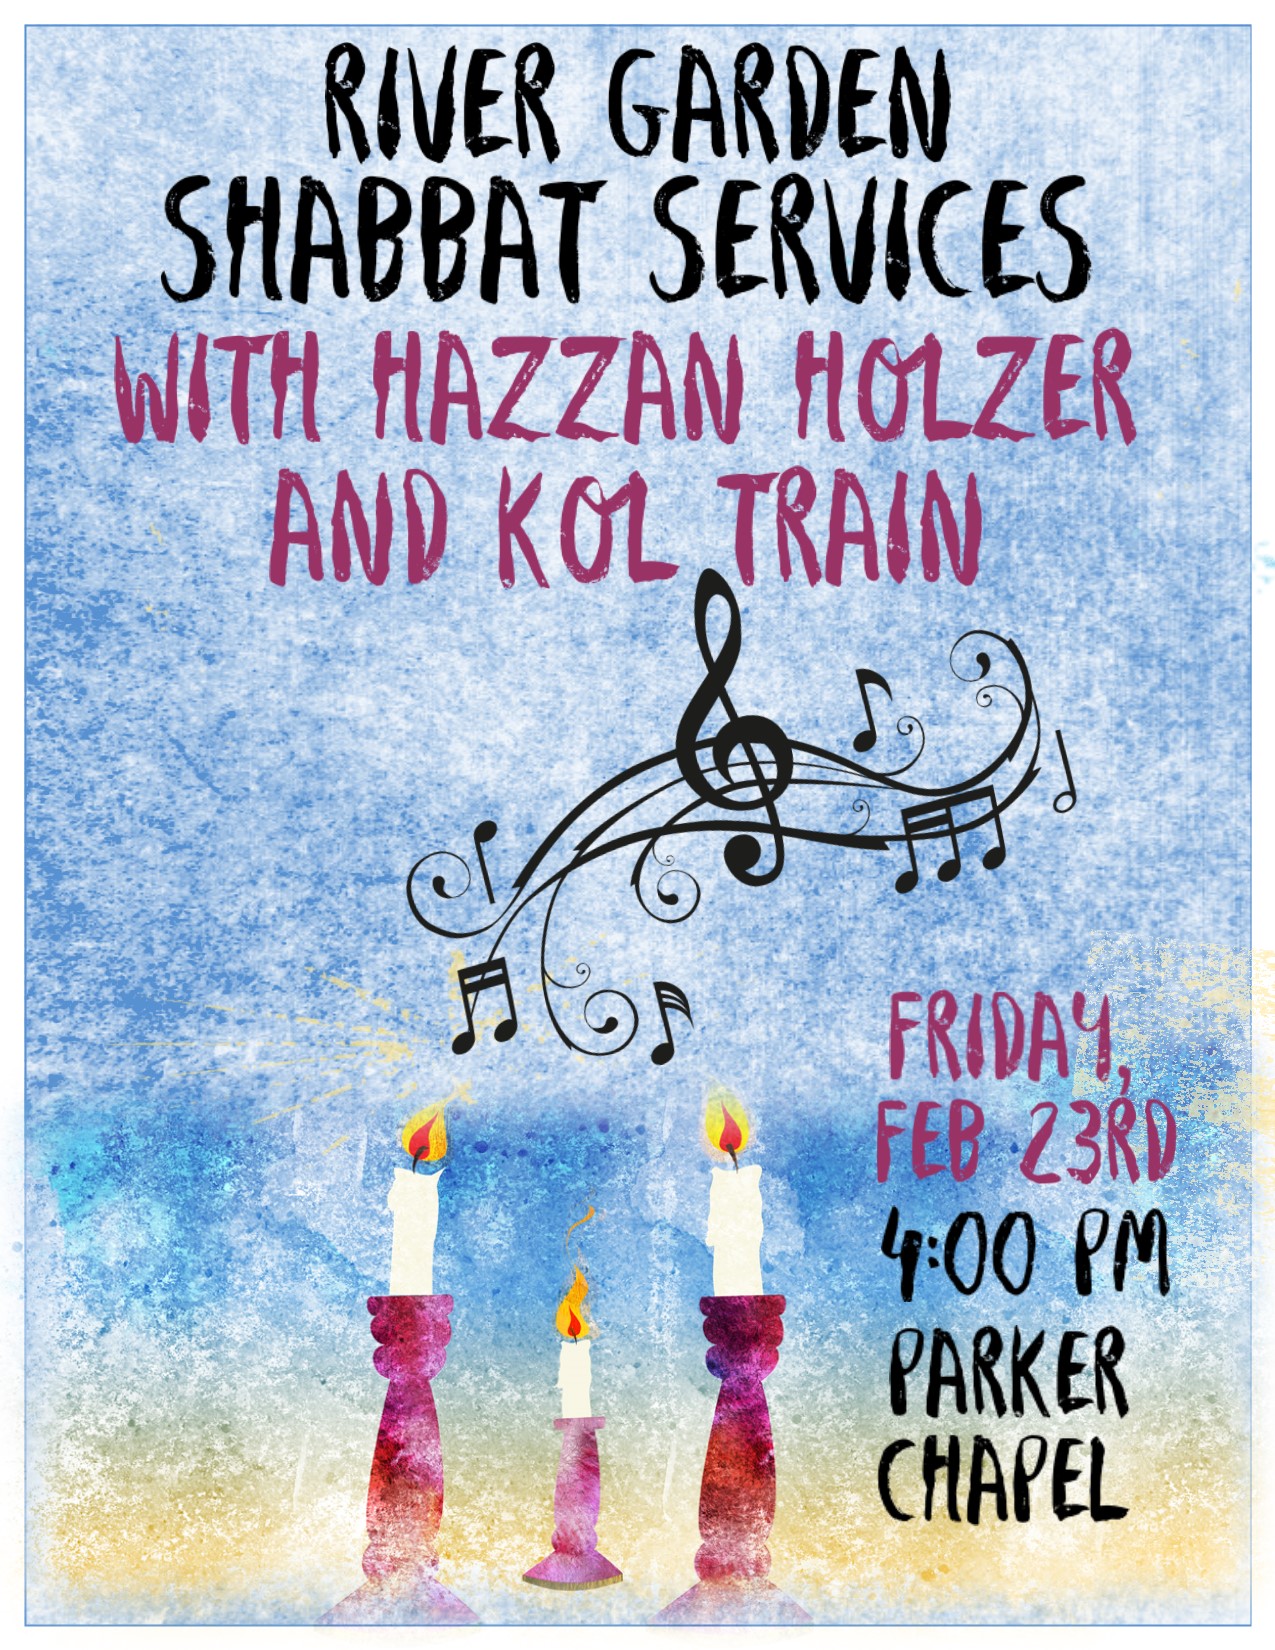 Shabbat Services Kol Train and Holzer